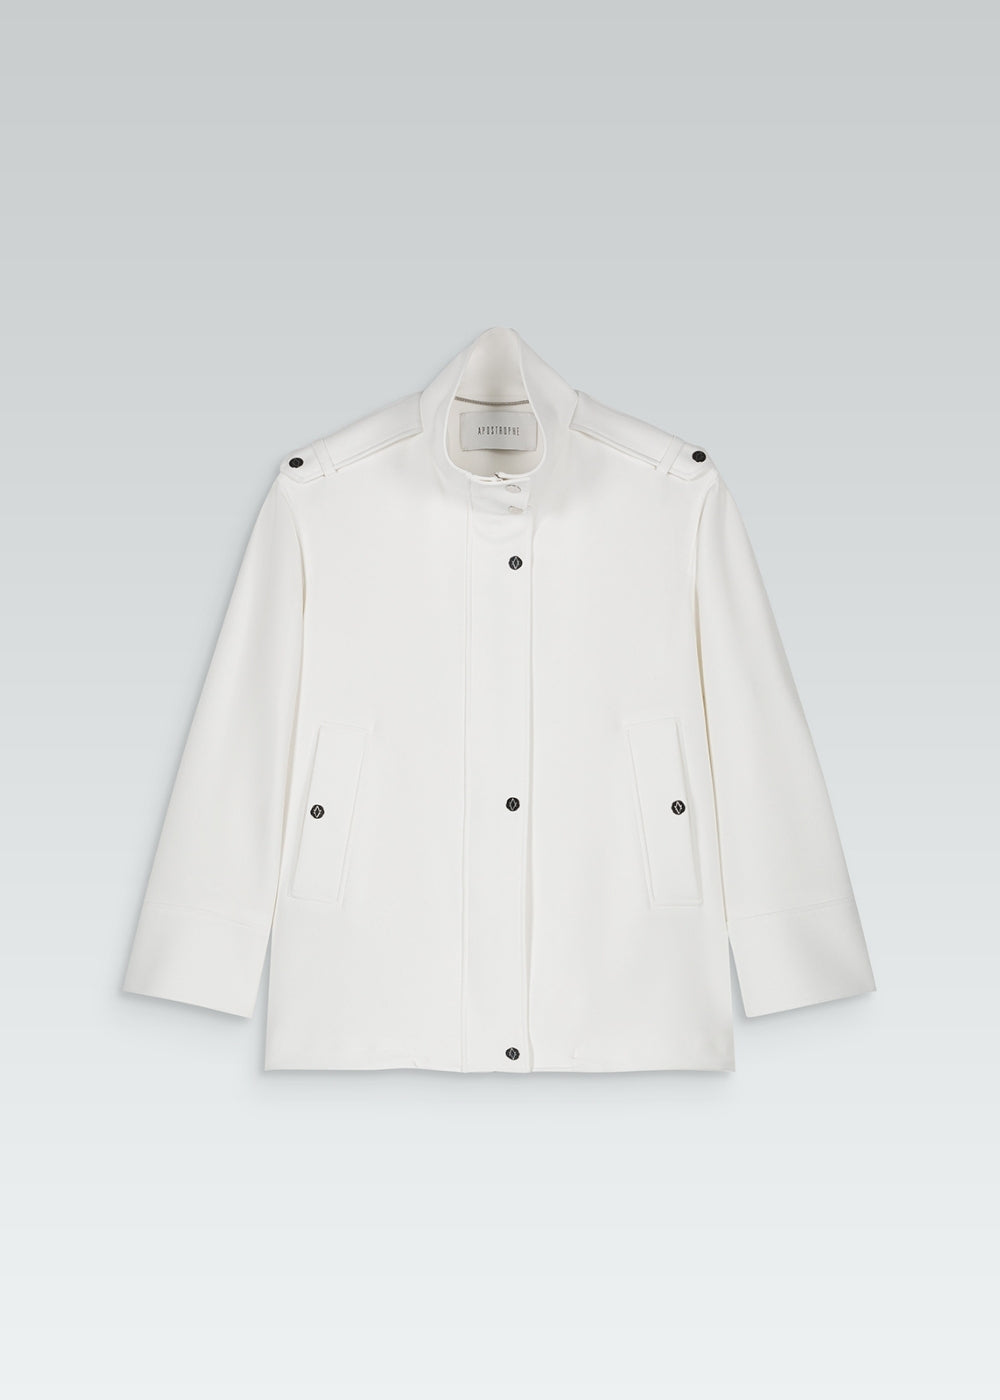 Veste blouson large blanc avec boutons à pressions gravés et poches passepoiles